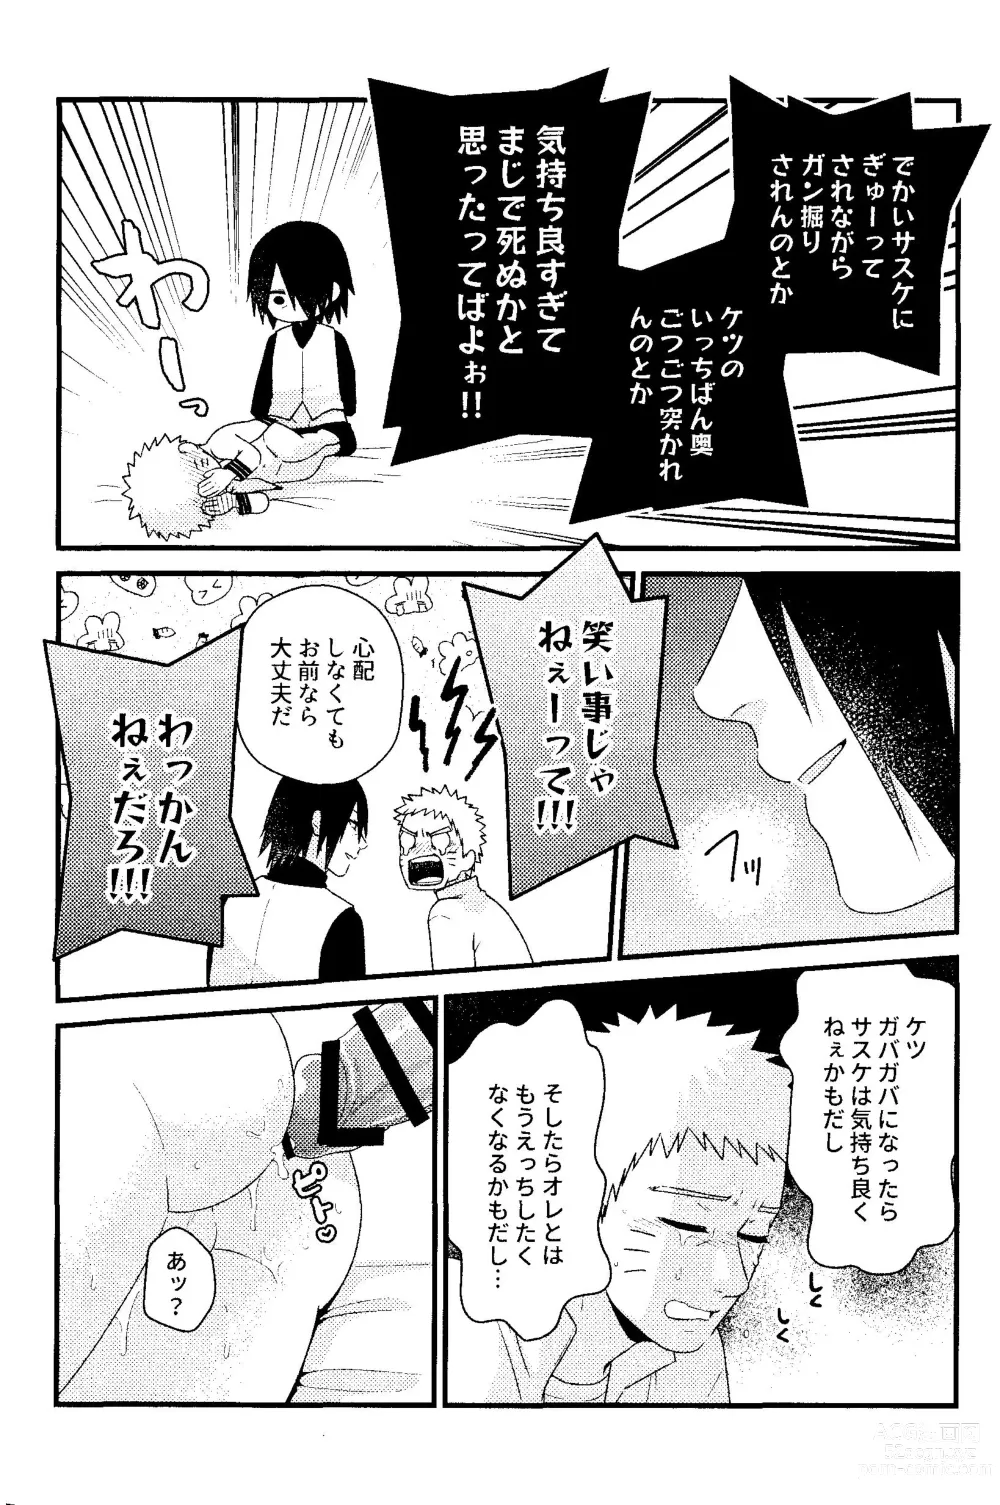 Page 31 of doujinshi Henge de Koi Shite